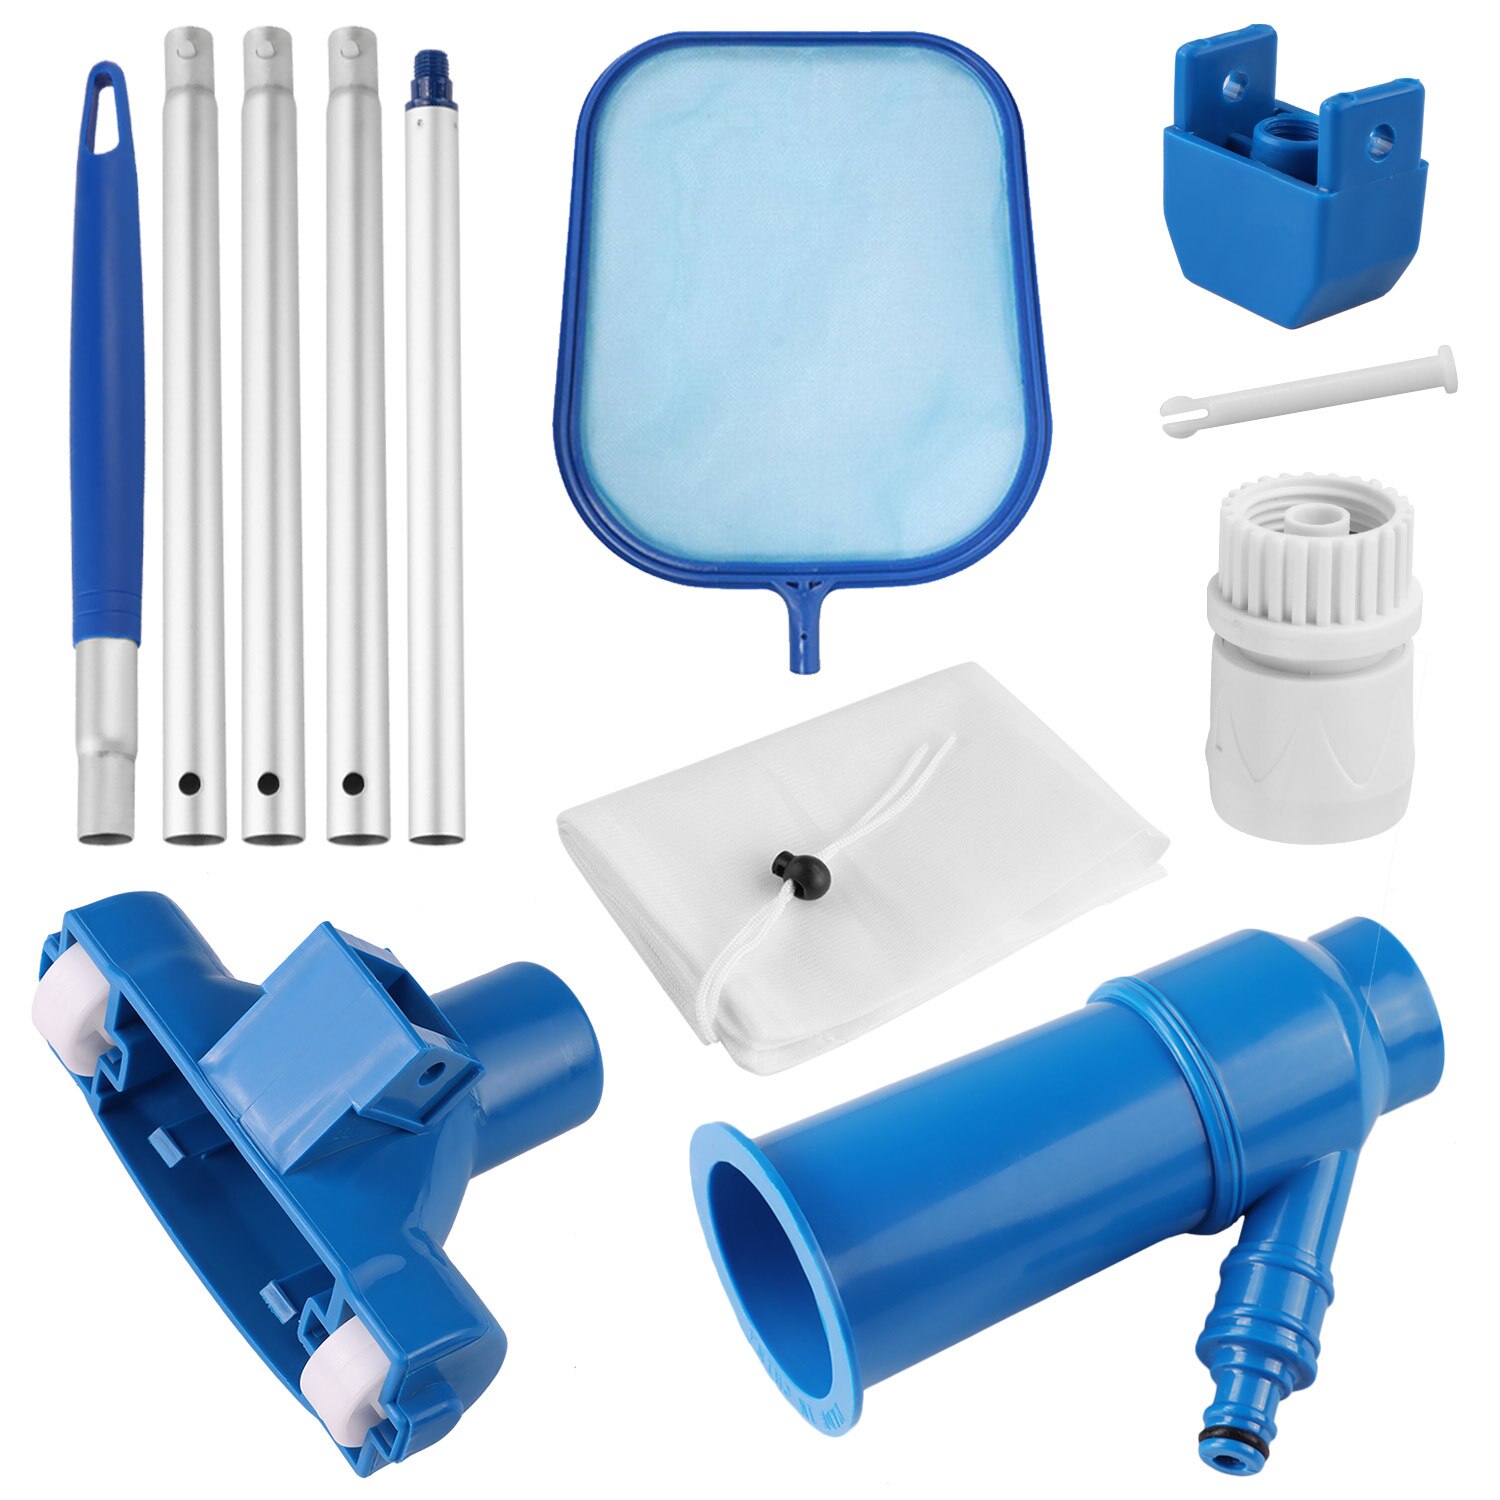 Kit de nettoyage piscine aspirateur piscine têtes de nettoyeur a Jet outils d'entretien avec filet de nettoyage pour piscine Spa bassin fontaine